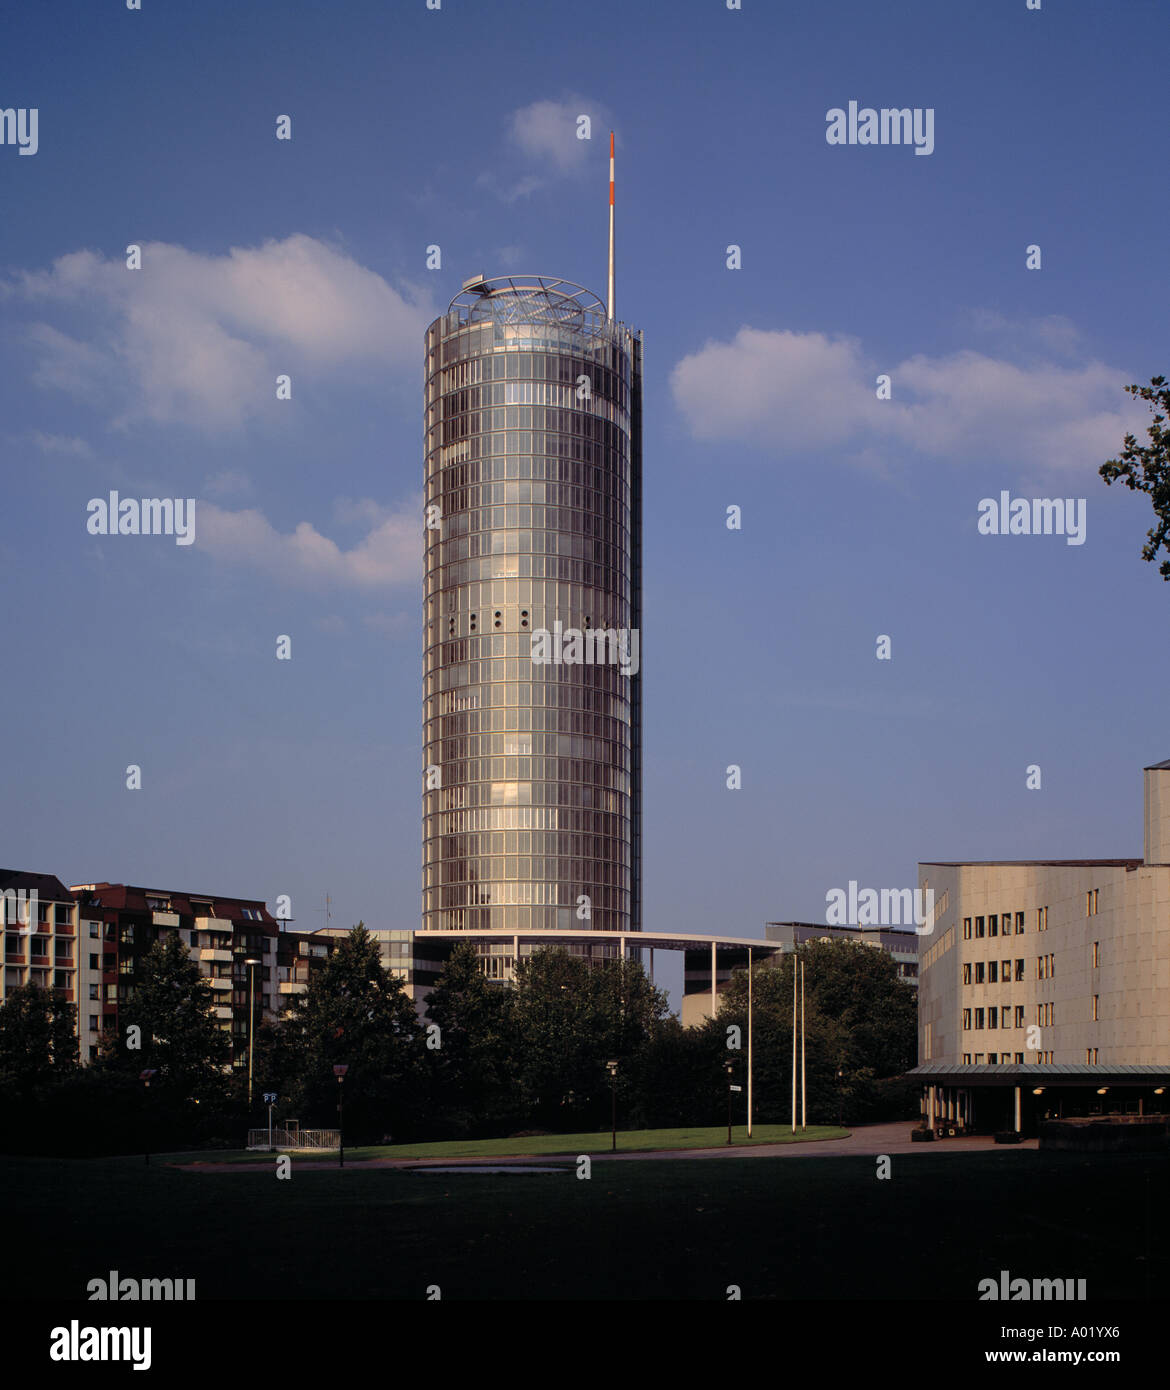 Aaltotheater und Hauptverwaltung von RWE, RWE-Turm, Essen, Ruhrgebiet, Nordrhein-Westfalen Stock Photo